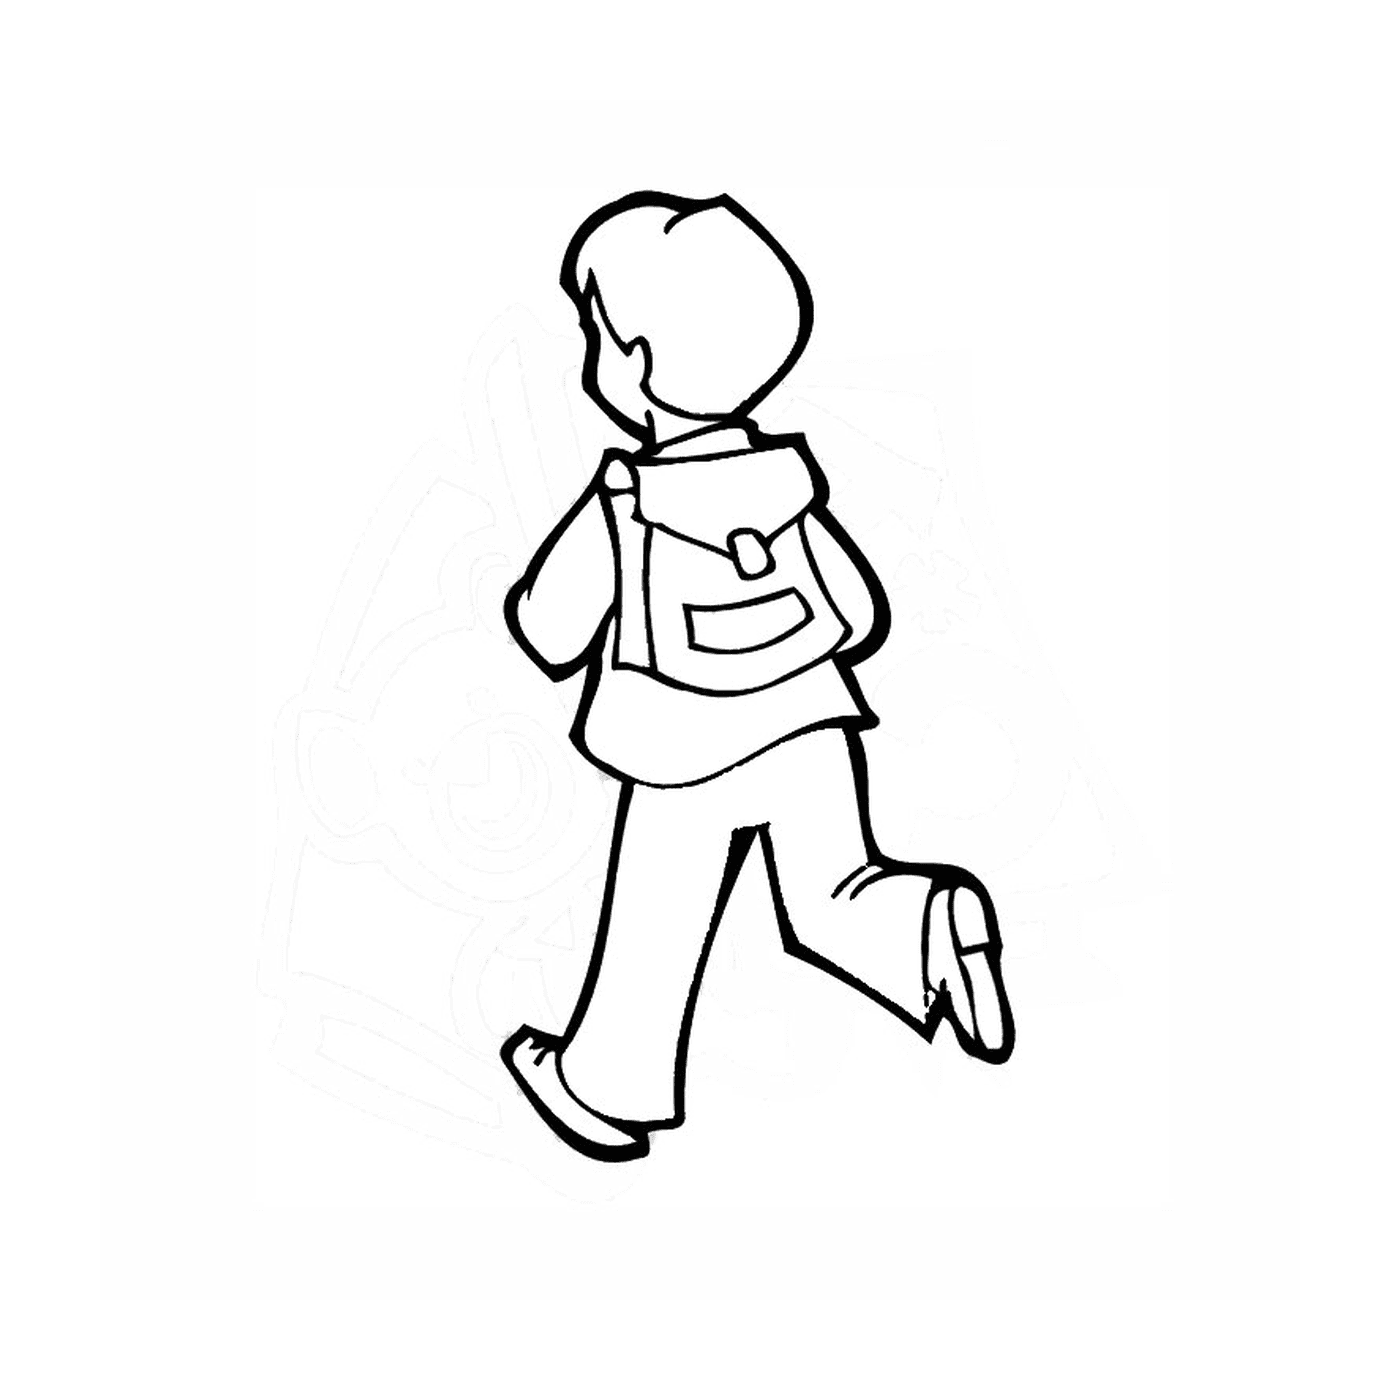  Estou indo para a escola: um menino andando 